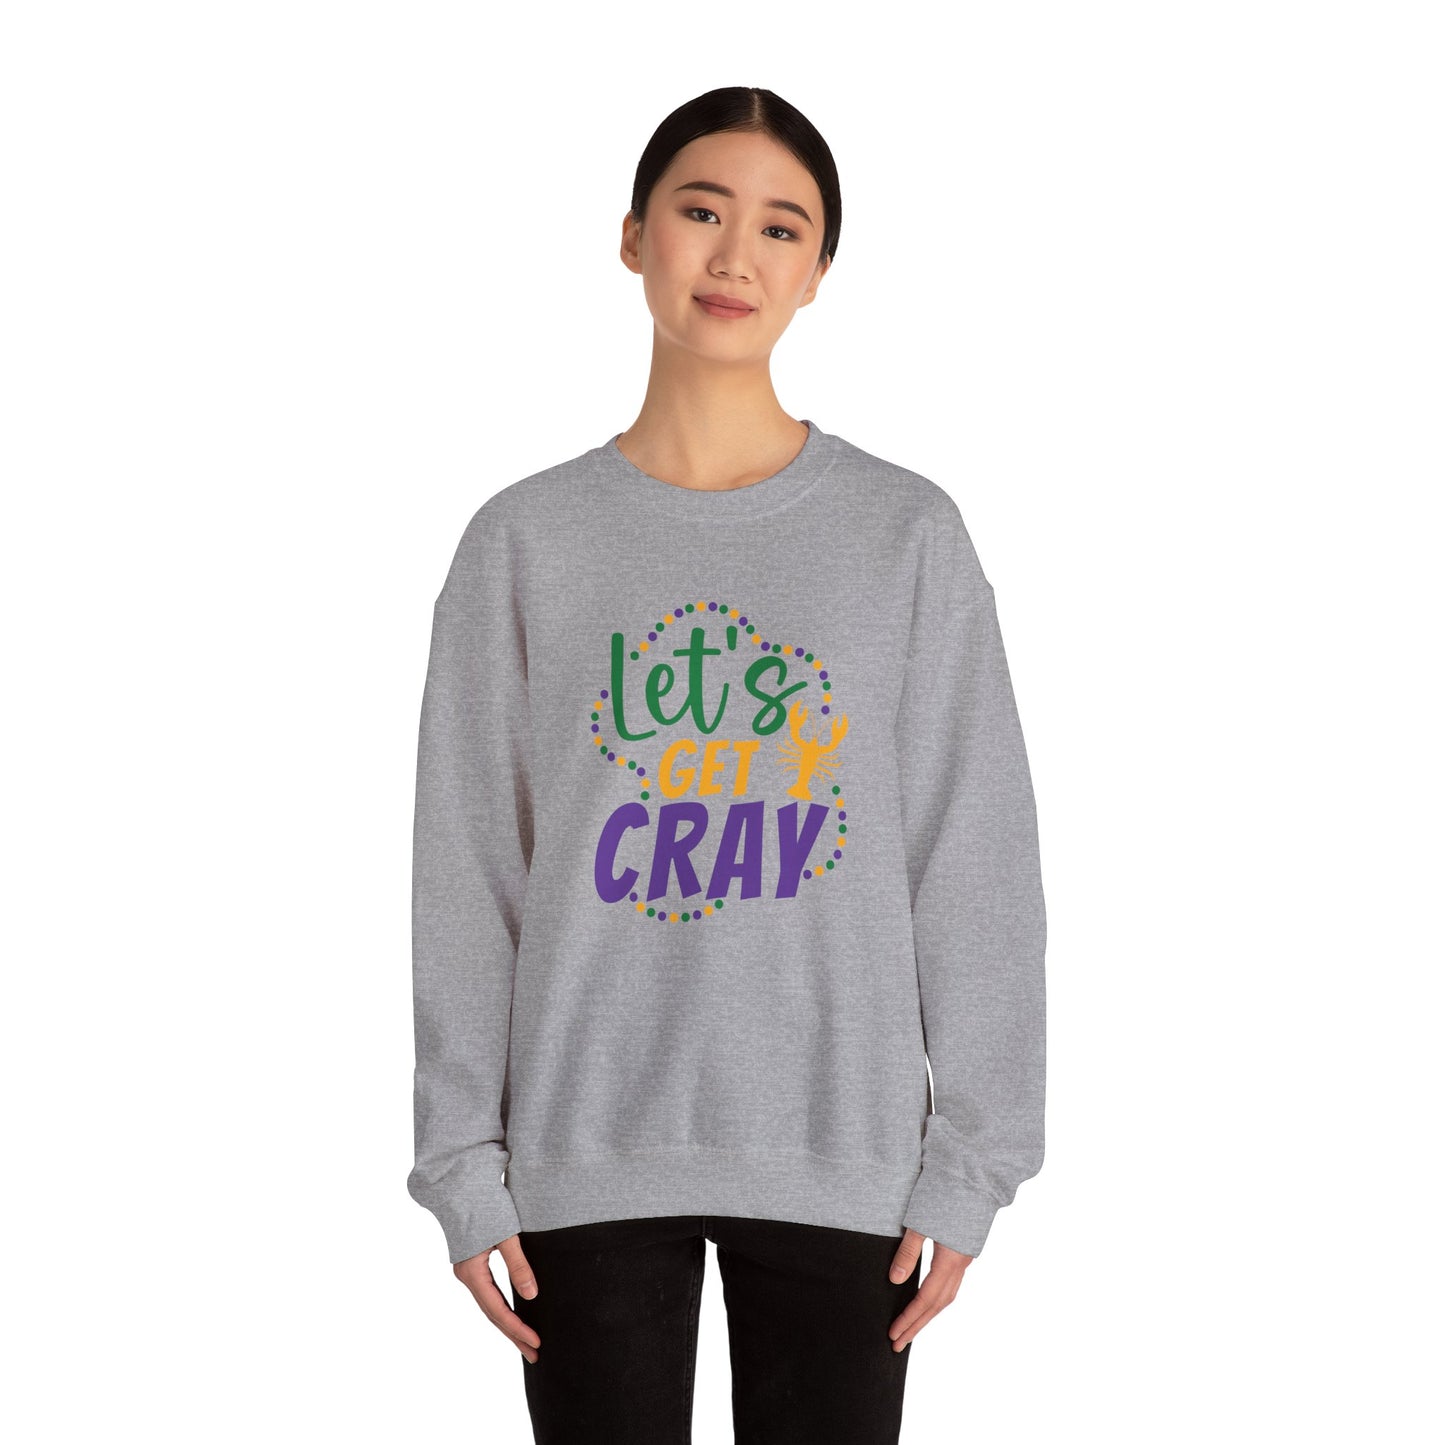 Let's Get Cray Sweatshirt Unisex Heavy Blend™ Crewneck Sweatshirt